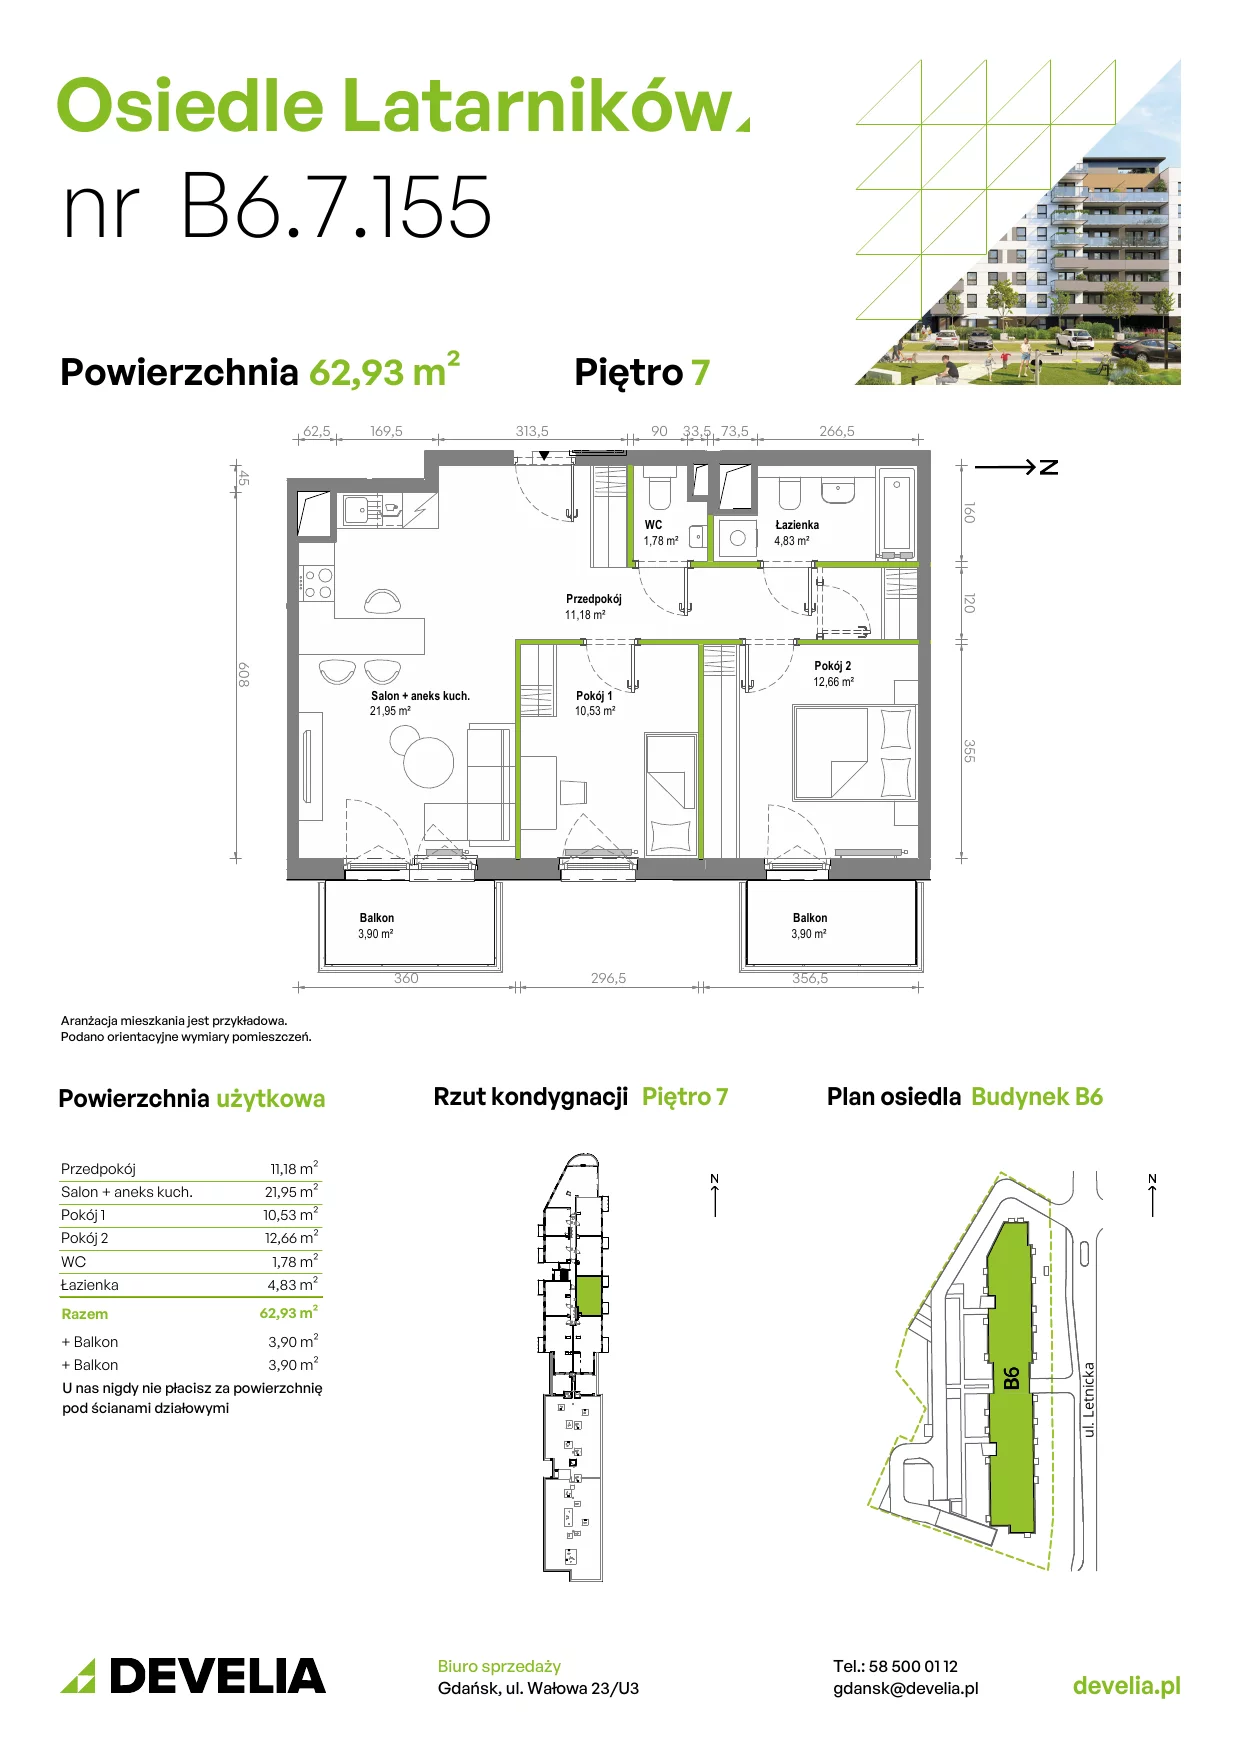 Mieszkanie 62,89 m², piętro 7, oferta nr B6.7.155, Osiedle Latarników, Gdańsk, Letnica, ul. Letnicka 1